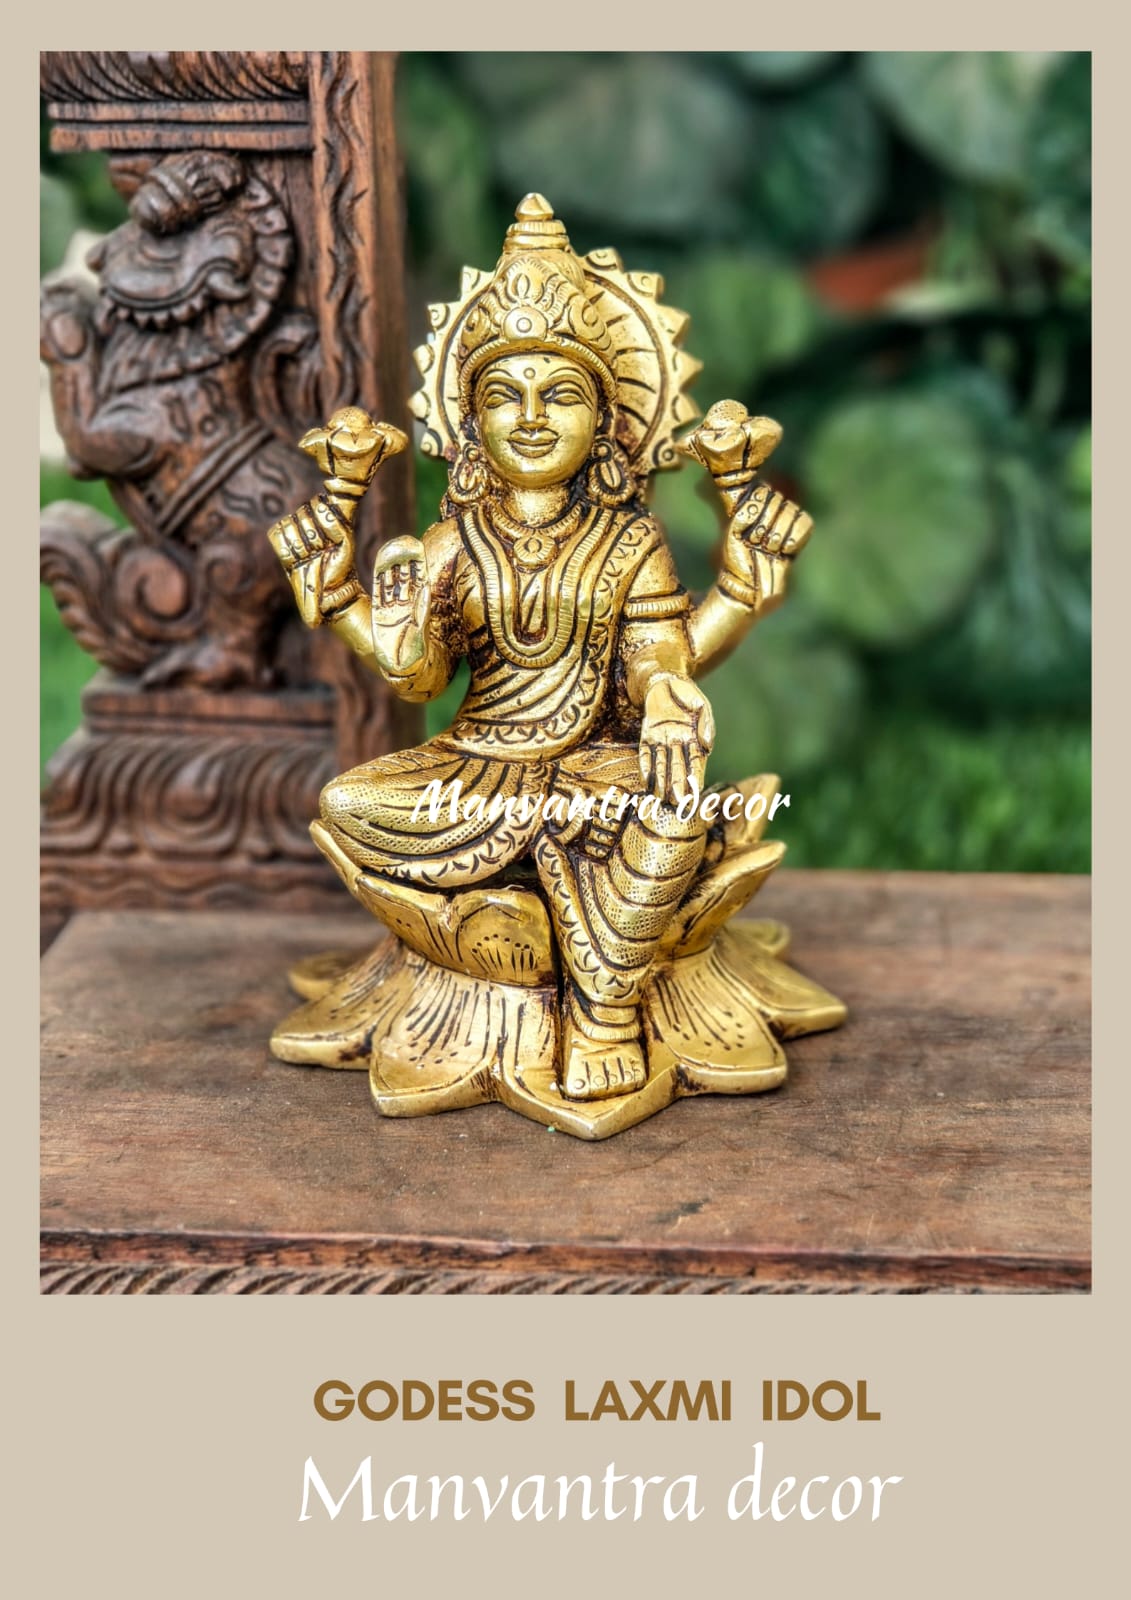 Lakshmi idol